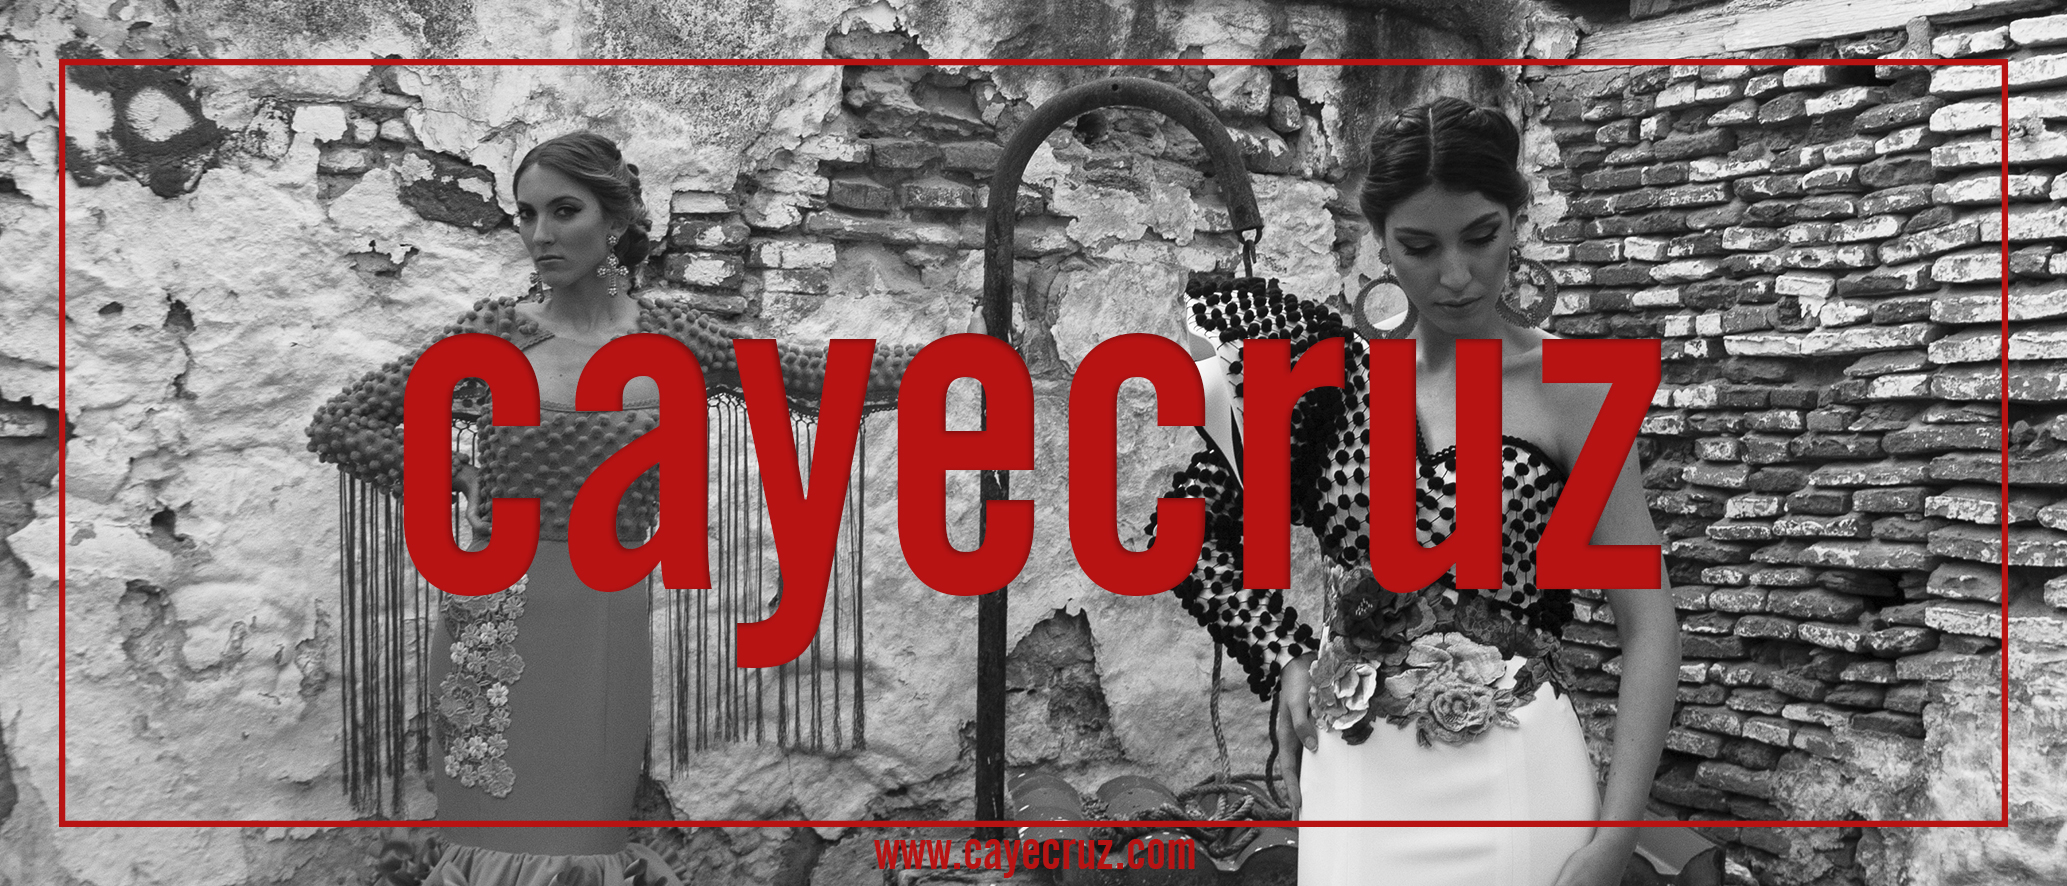 CayeCruz NO cubrirá We Love Flamenco 2017